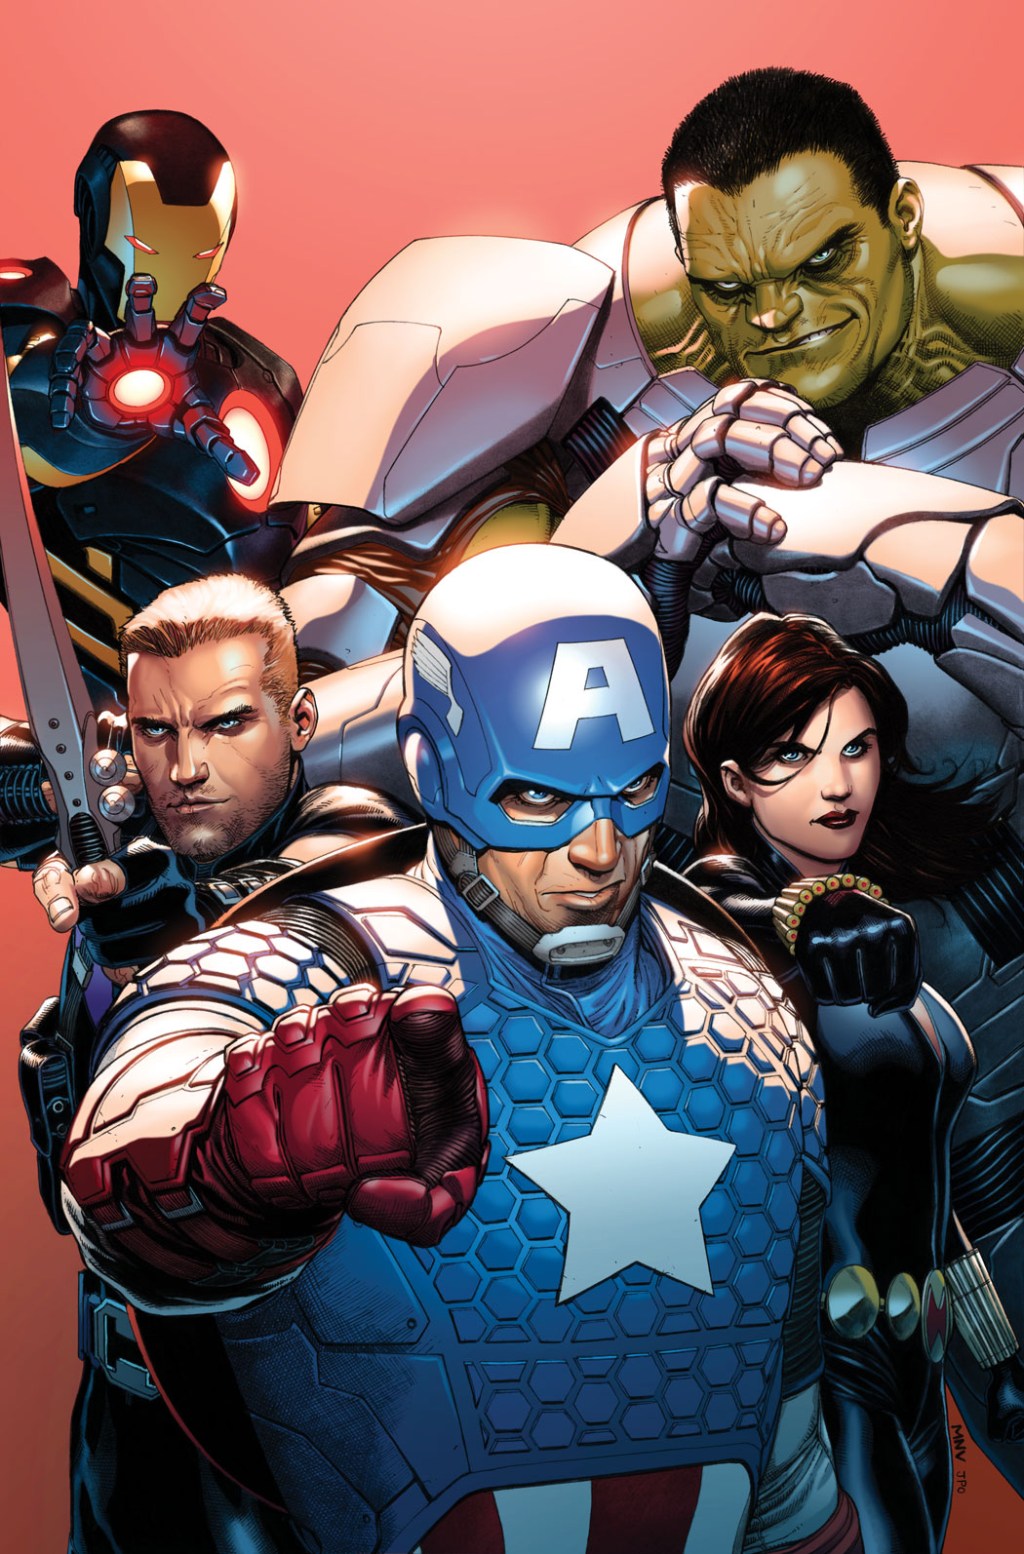 Os Vingadores sendo sua campanha de recrutamento na capa variante de Steve McNiven para Avengers Vol. 5 # 1 "Os Vingadores: Mundo dos Vingadores" (2012), Marvel Comics